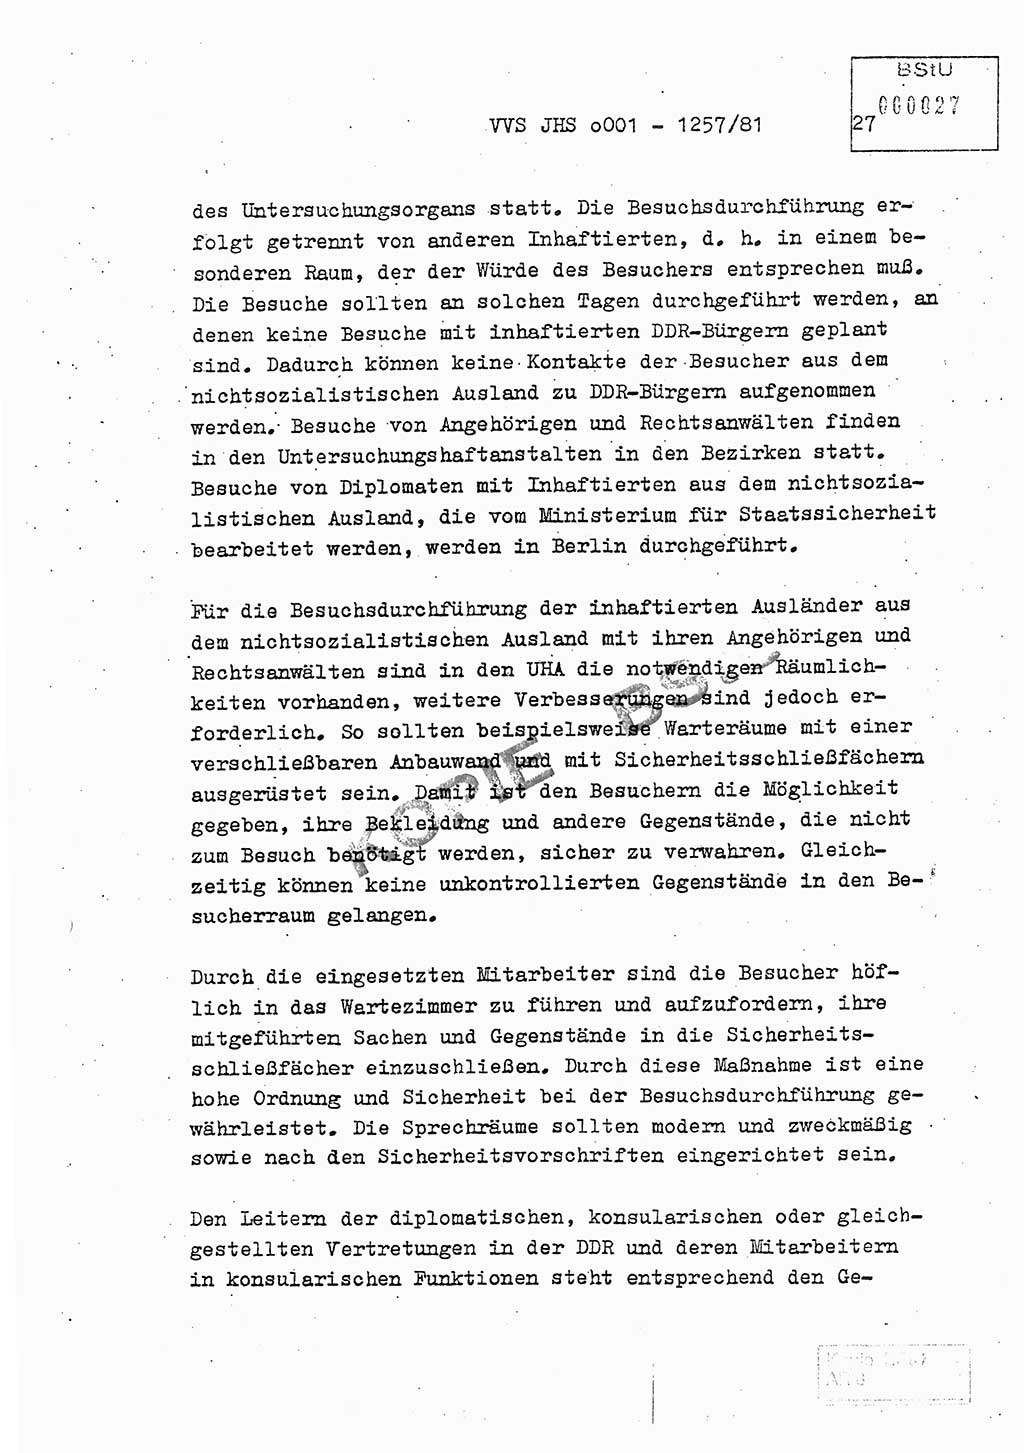 Fachschulabschlußarbeit Unterleutnant Dieter Möller (BV Rst. Abt. ⅩⅣ), Ministerium für Staatssicherheit (MfS) [Deutsche Demokratische Republik (DDR)], Juristische Hochschule (JHS), Vertrauliche Verschlußsache (VVS) o001-1257/81, Potsdam 1982, Seite 27 (FS-Abschl.-Arb. MfS DDR JHS VVS o001-1257/81 1982, S. 27)